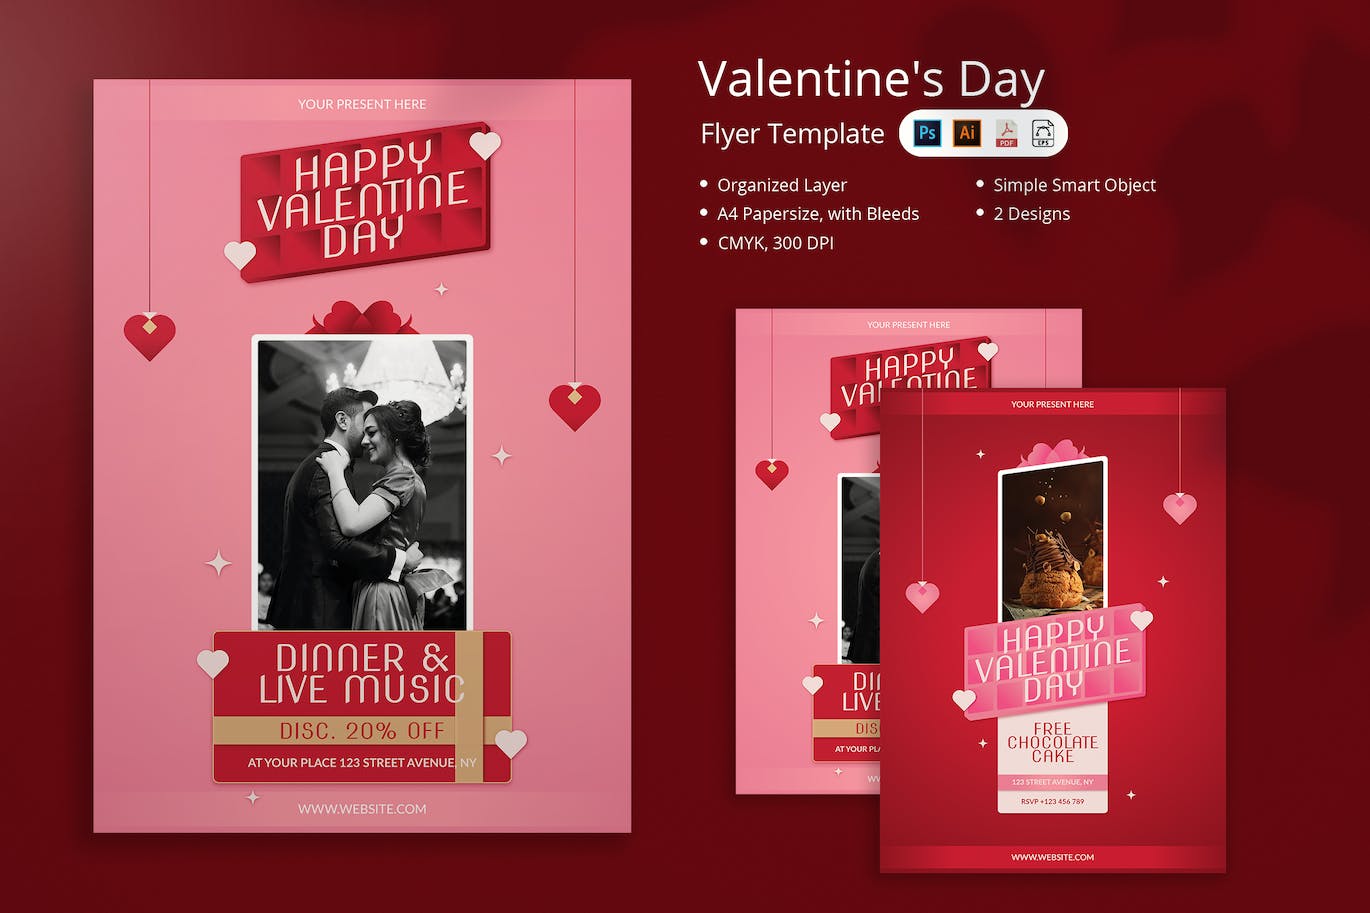 爱心情人节传单模板 Niken – Valentine’s Day Flyer 设计素材 第1张